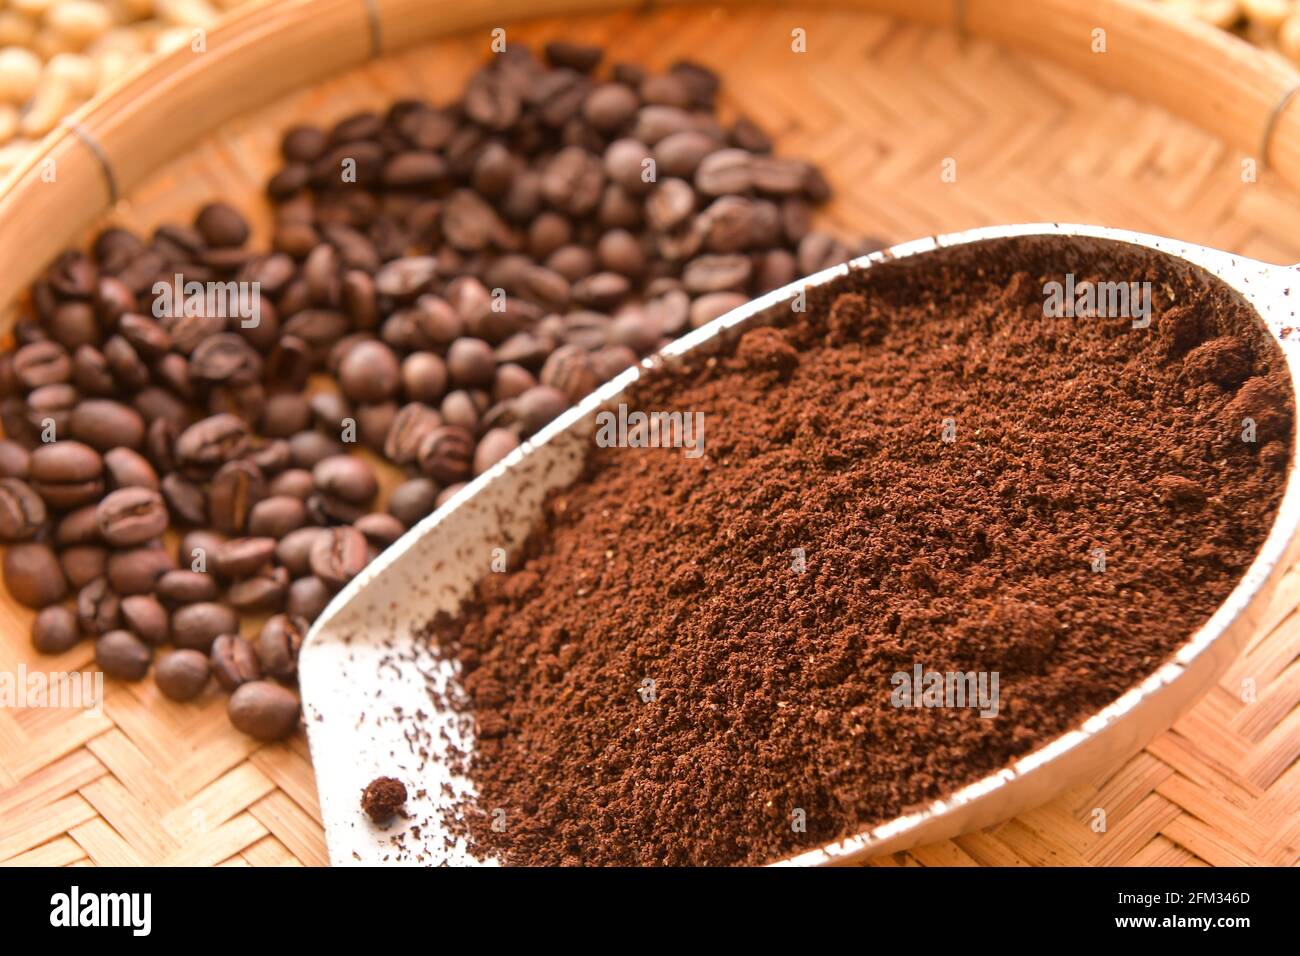 Geröstete Kaffeebohnen und gemahlener Kaffee auf einem Bambusblech Stockfoto